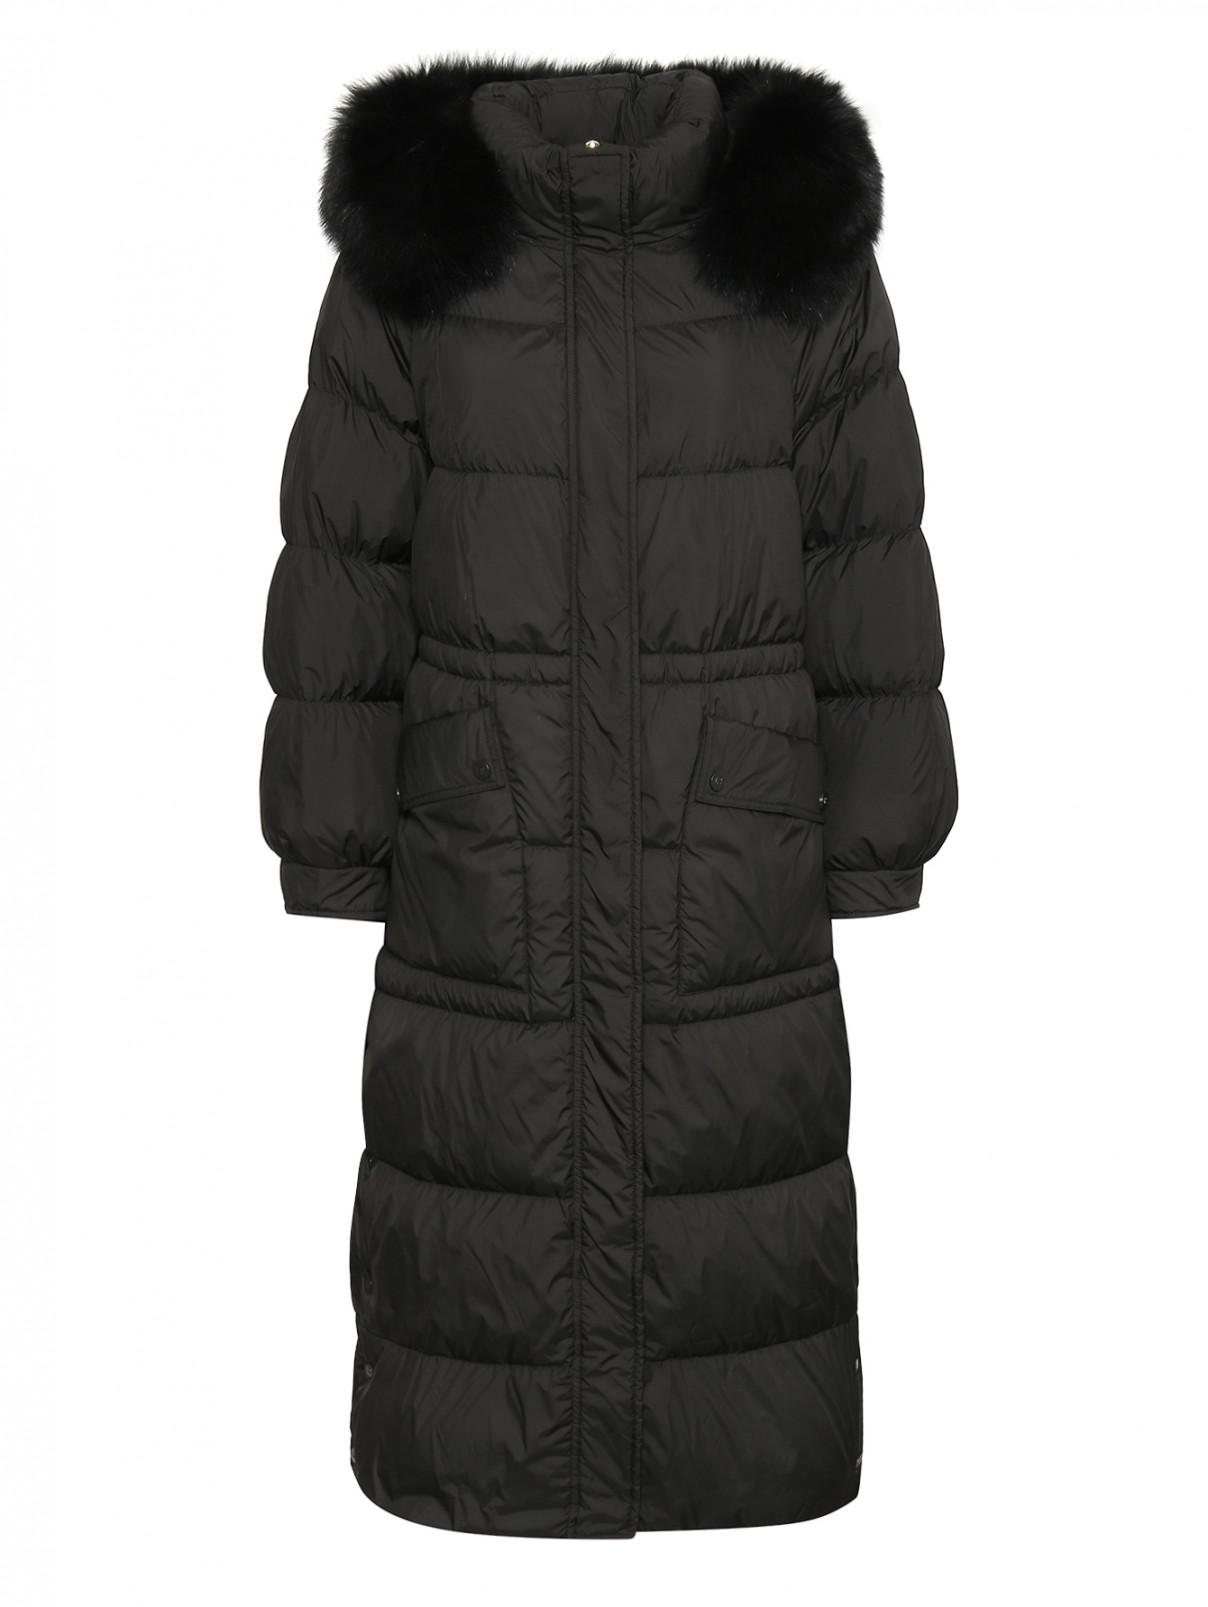 Стеганое пуховое пальто с карманами Luisa Spagnoli  –  Общий вид  – Цвет:  Черный